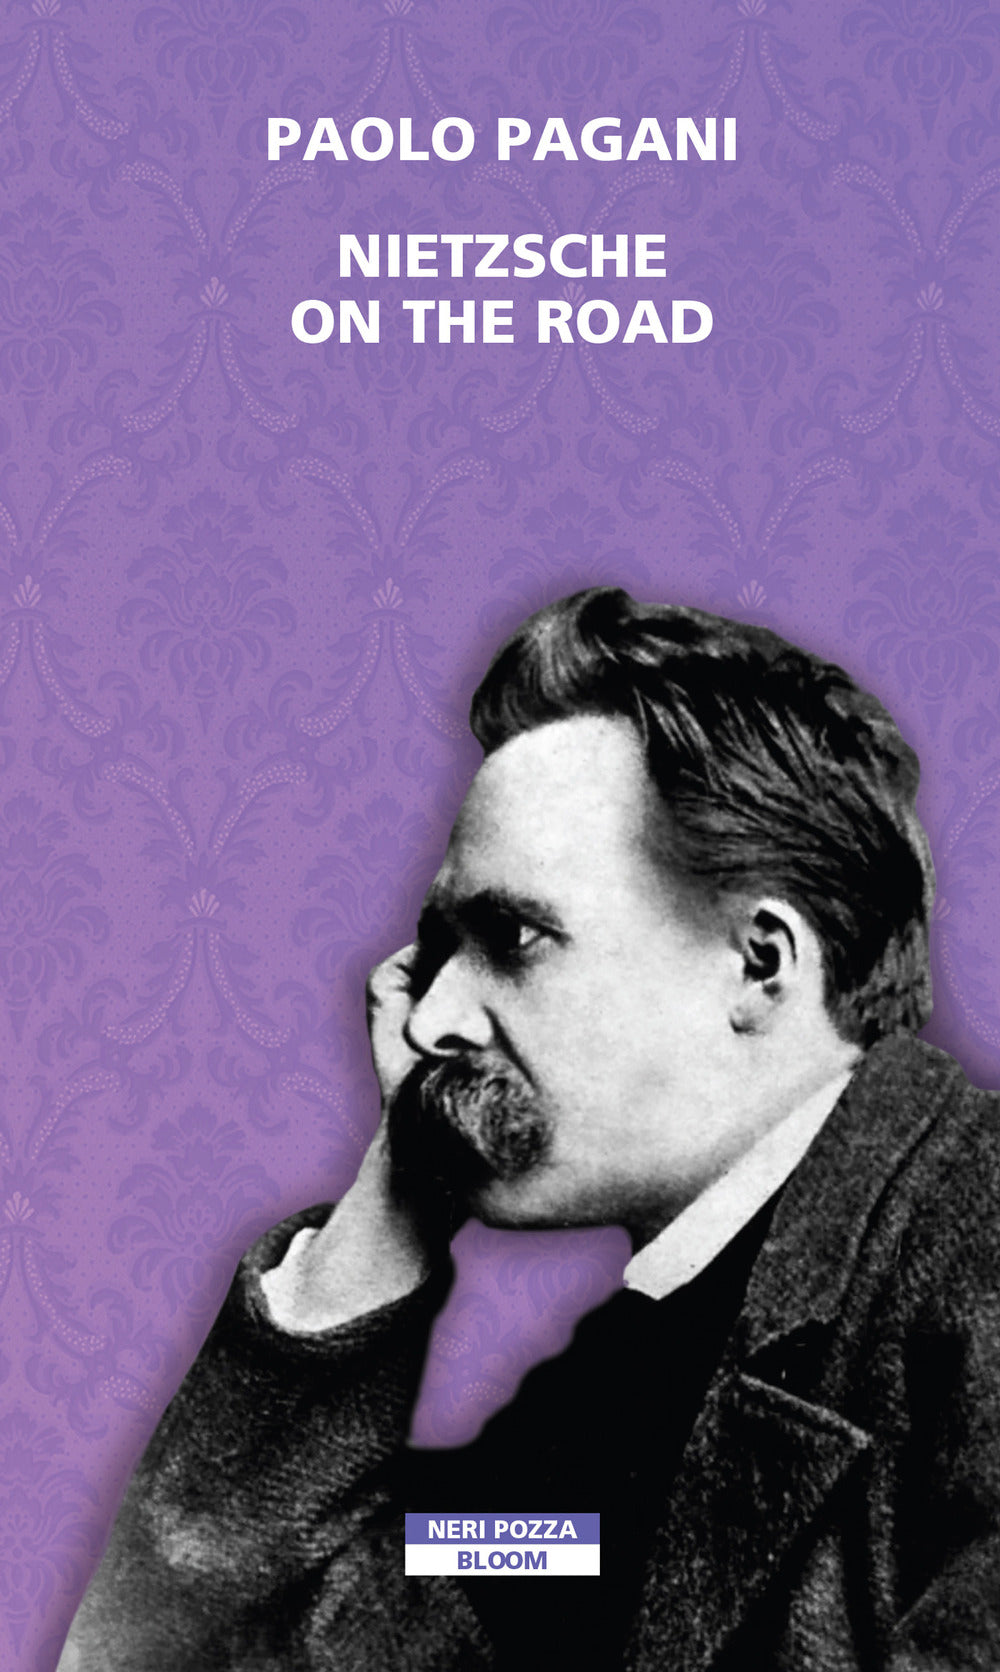 Nietzsche on the road.